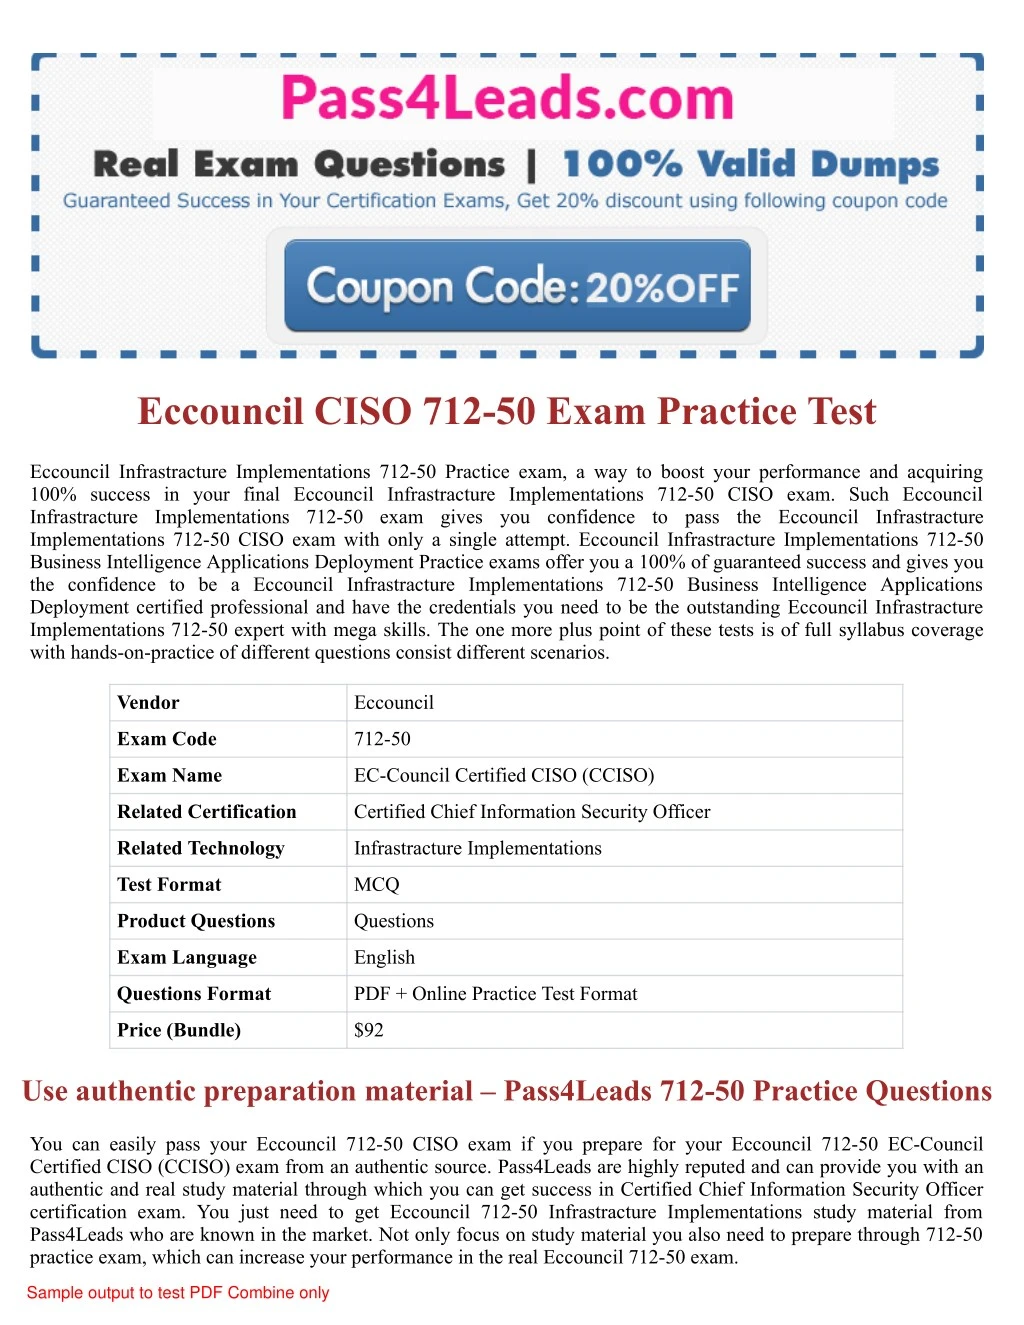 eccouncil ciso 712 50 exam practice test